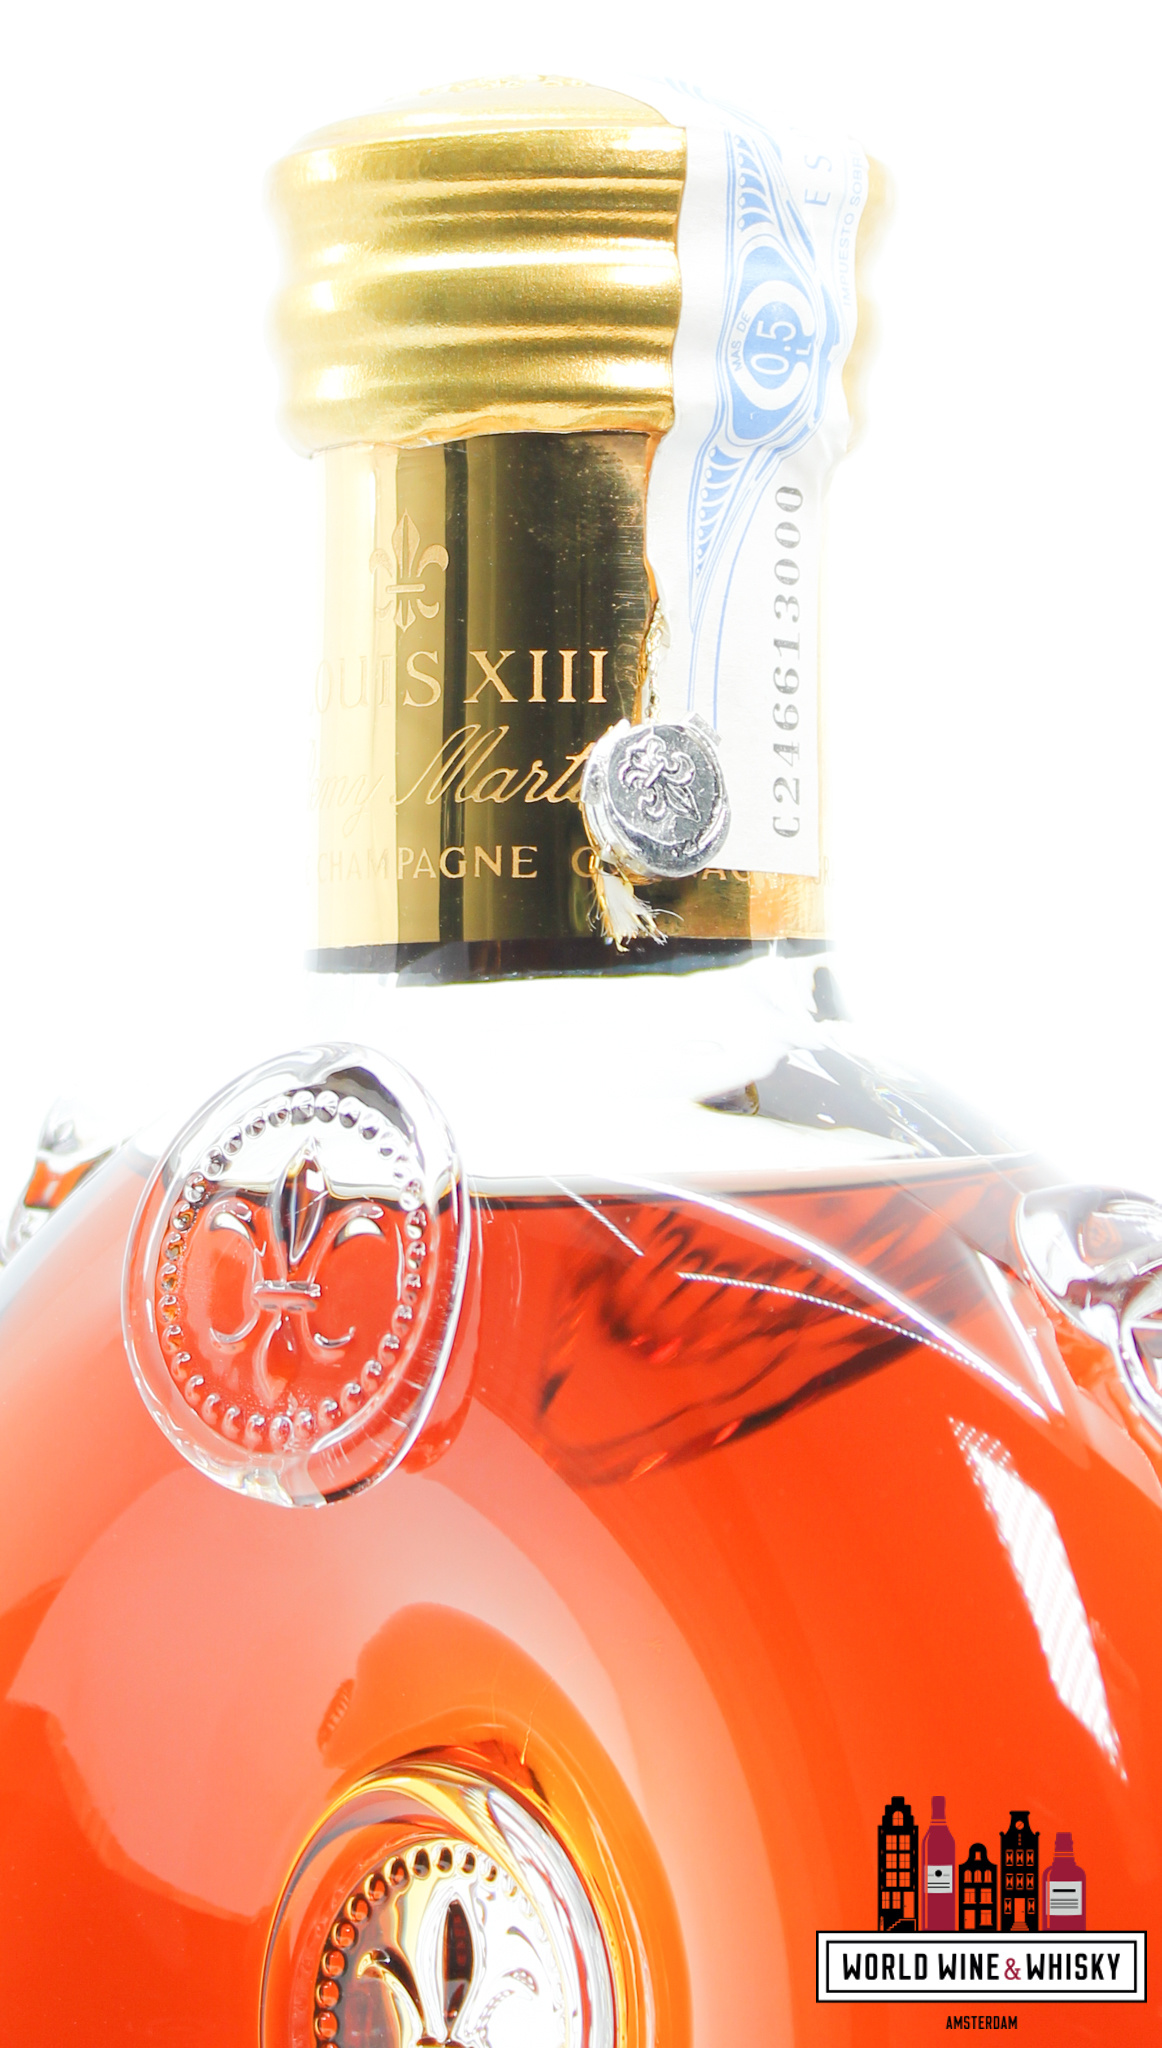 Remy Martin Louis XIII de Remy Martin Grande Champagne Cognac in Lock Box  15lt Bottle